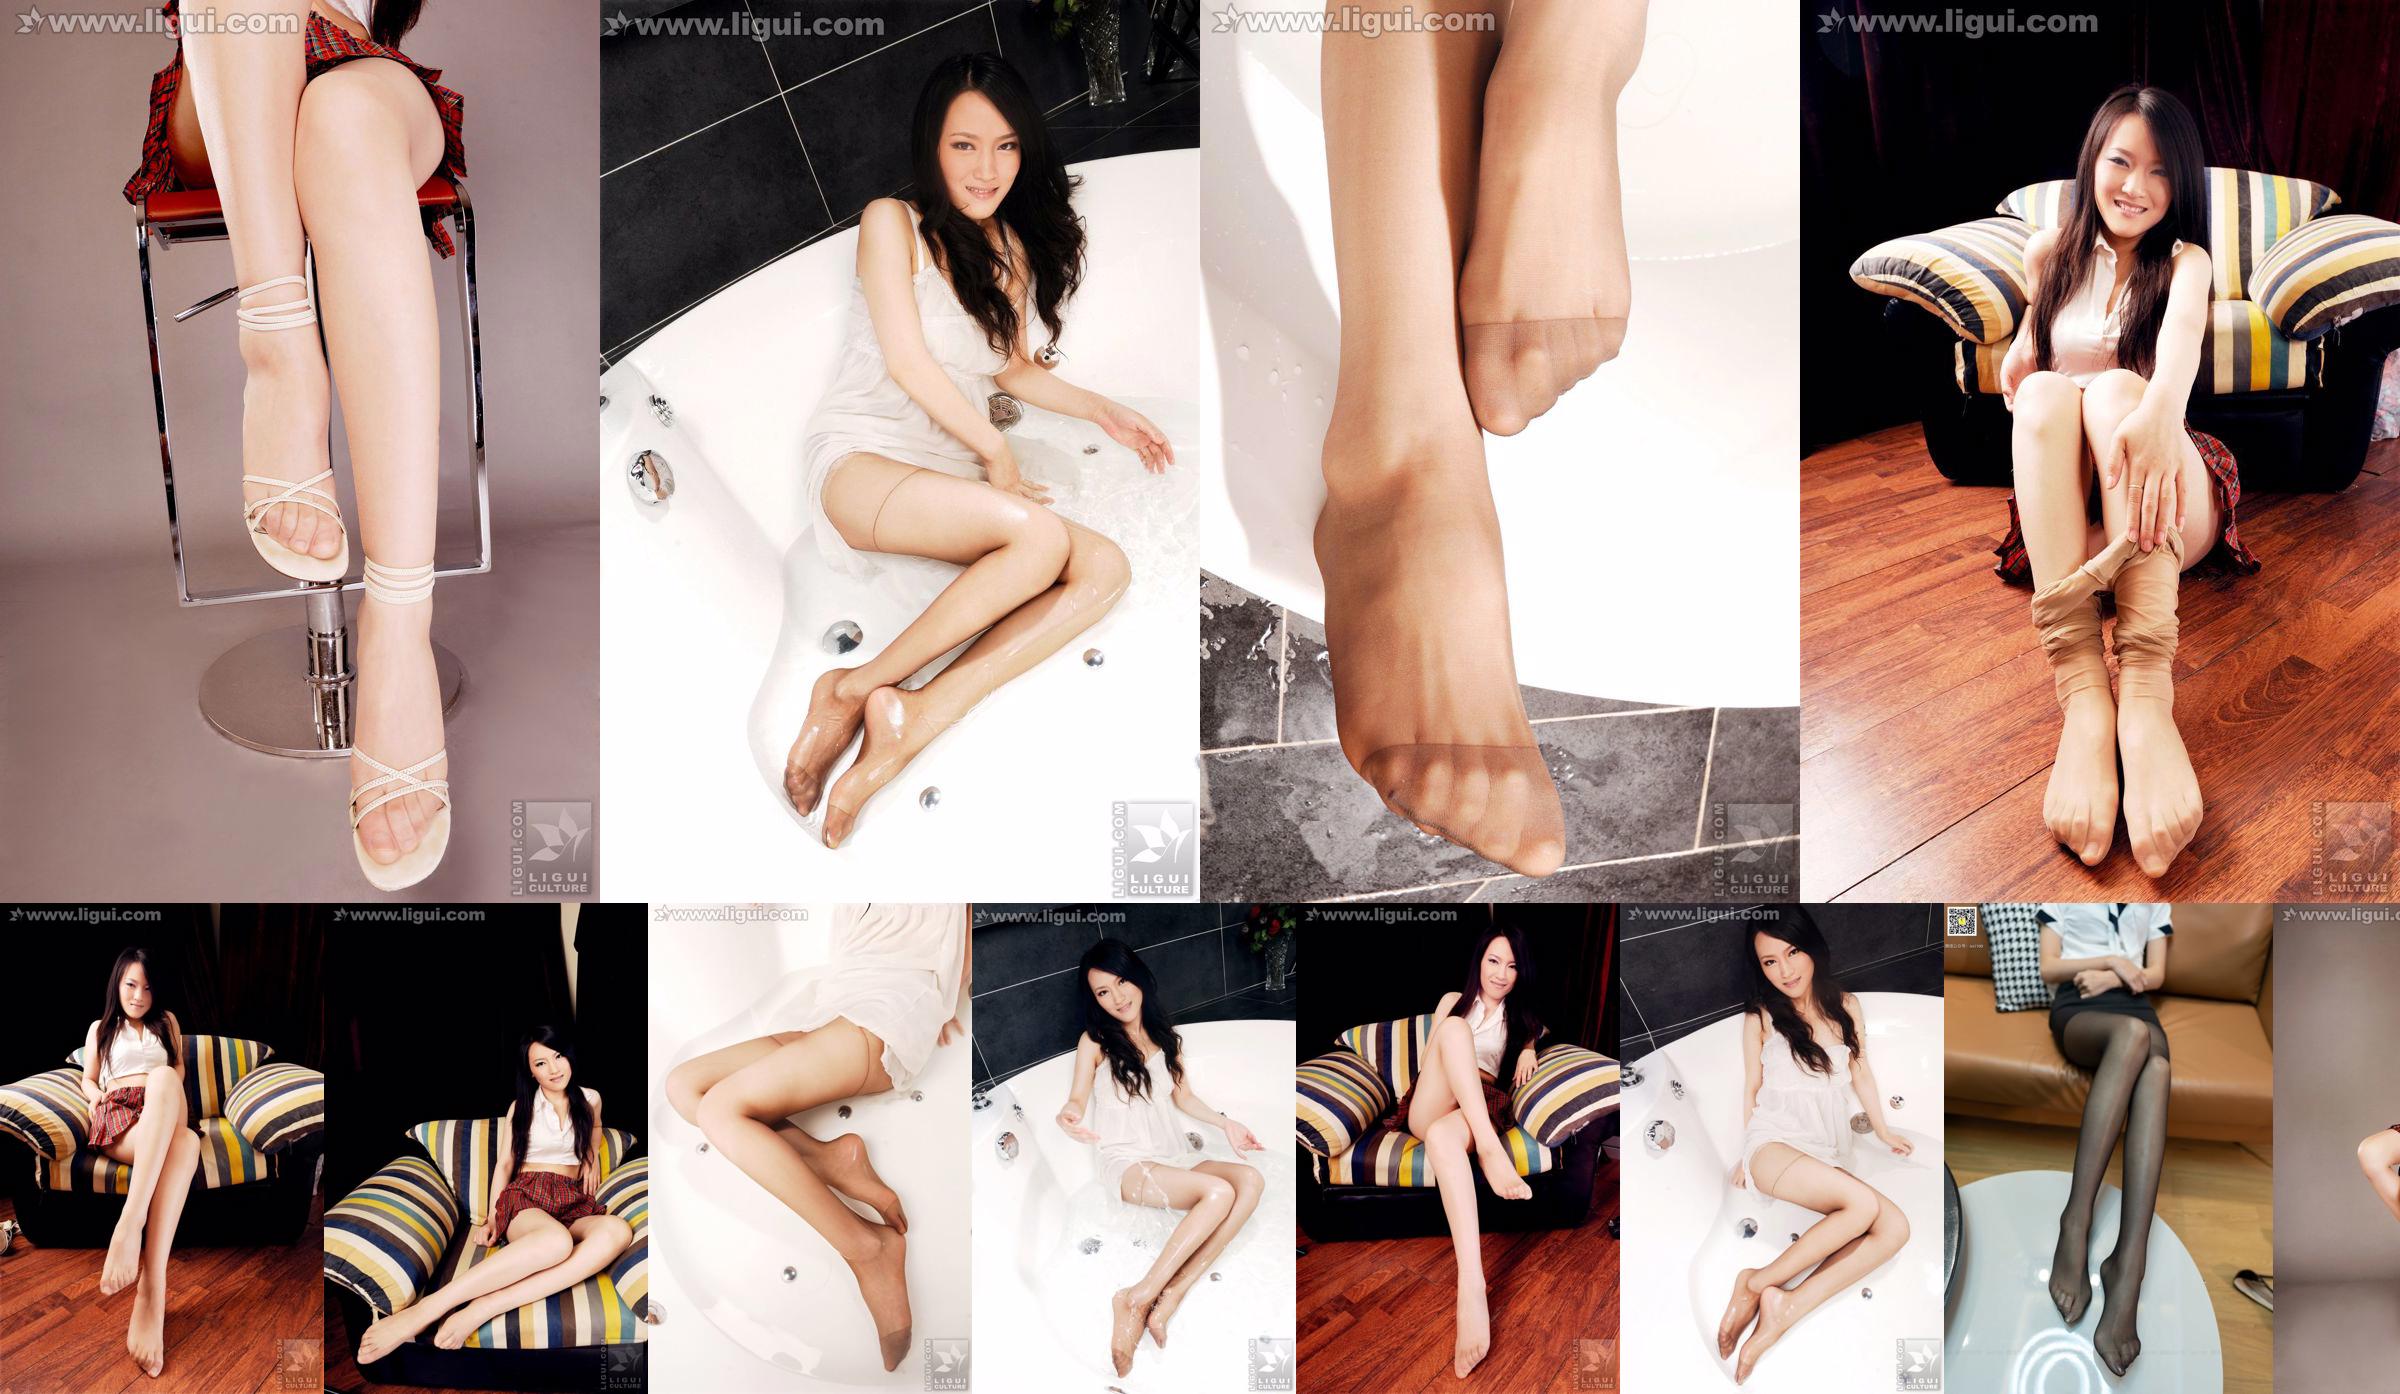 Modelo Wen Ting "Meias de carne doces e fofas com salto alto" [丽 柜 LiGui] Foto de belas pernas e pés de jade No.4b67da Página 14